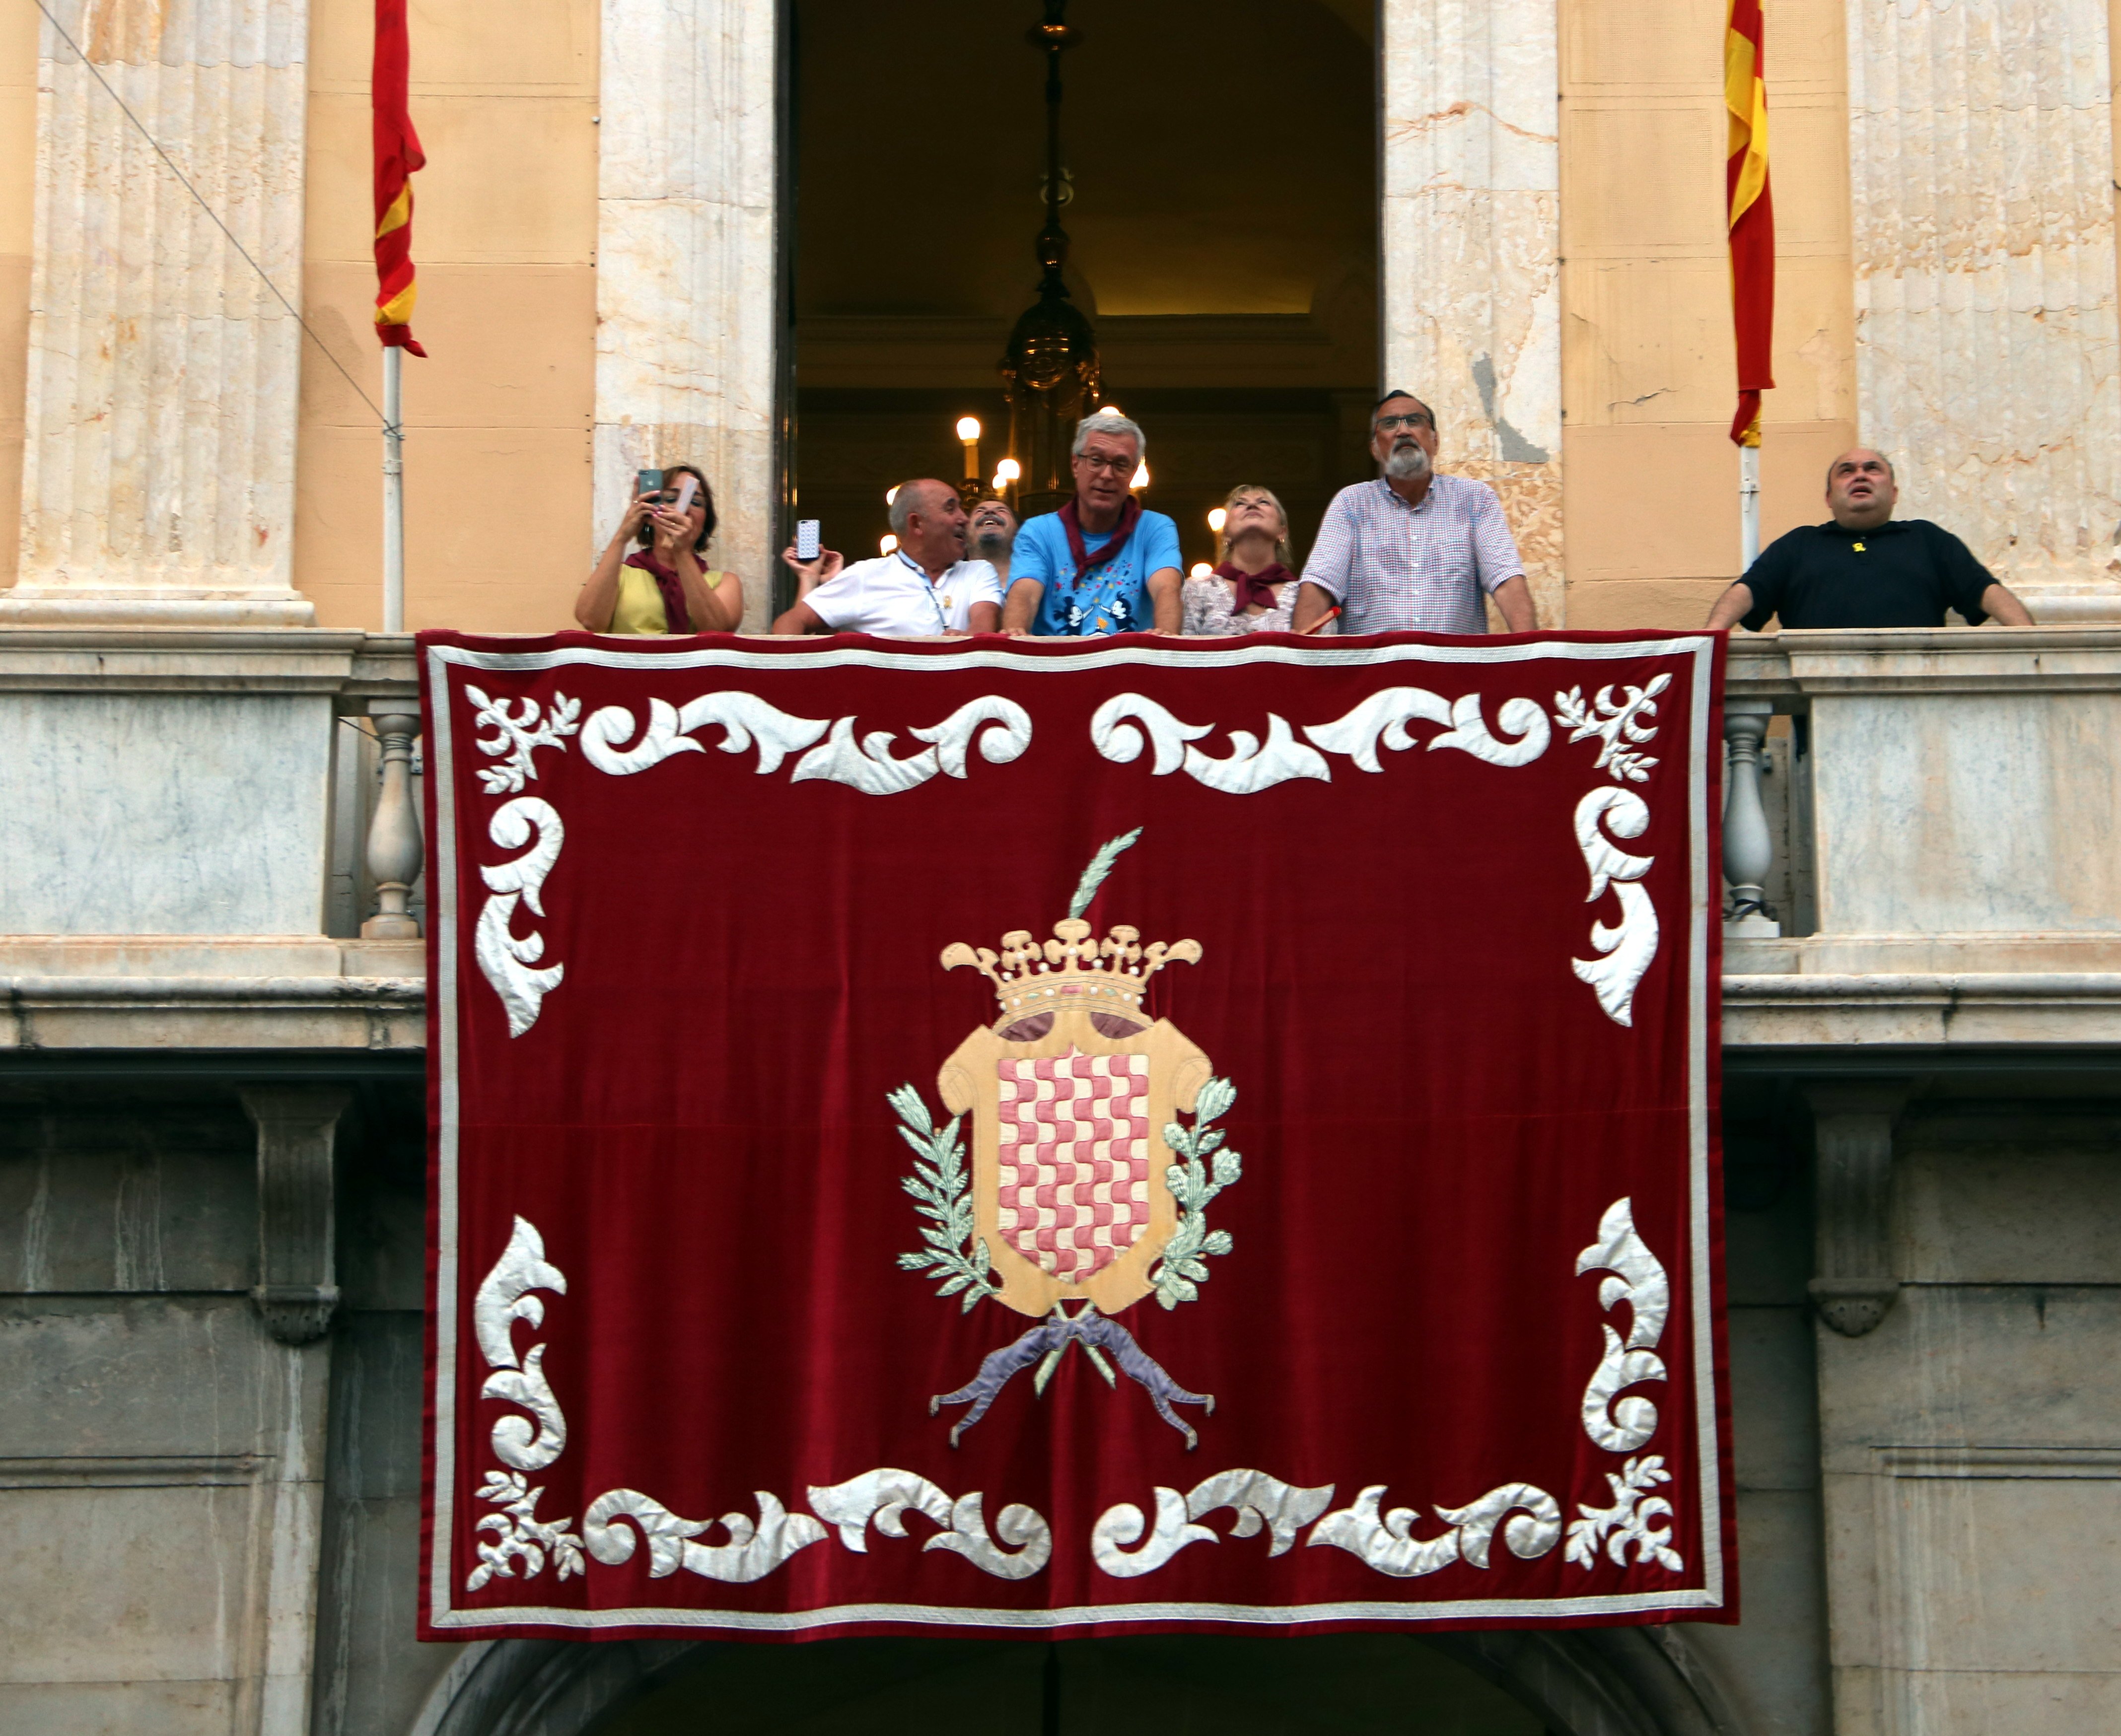 Xiulada i crits de "Ballesteros dimissió" en l'inici de les festes de Tarragona